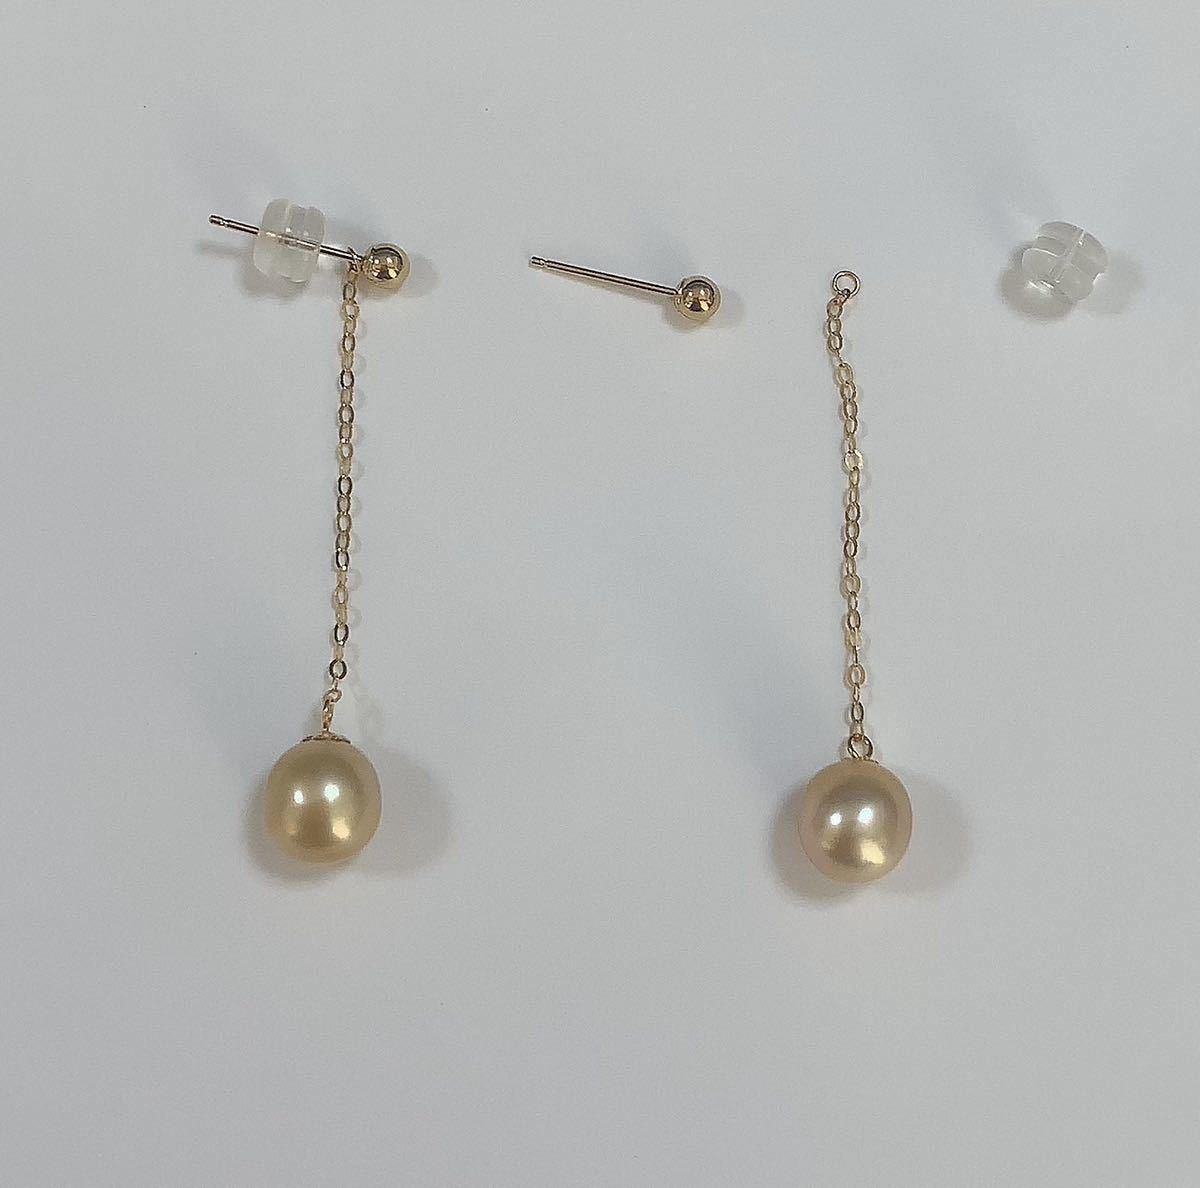 K18 south . White Butterfly pearl long earrings american earrings 2way